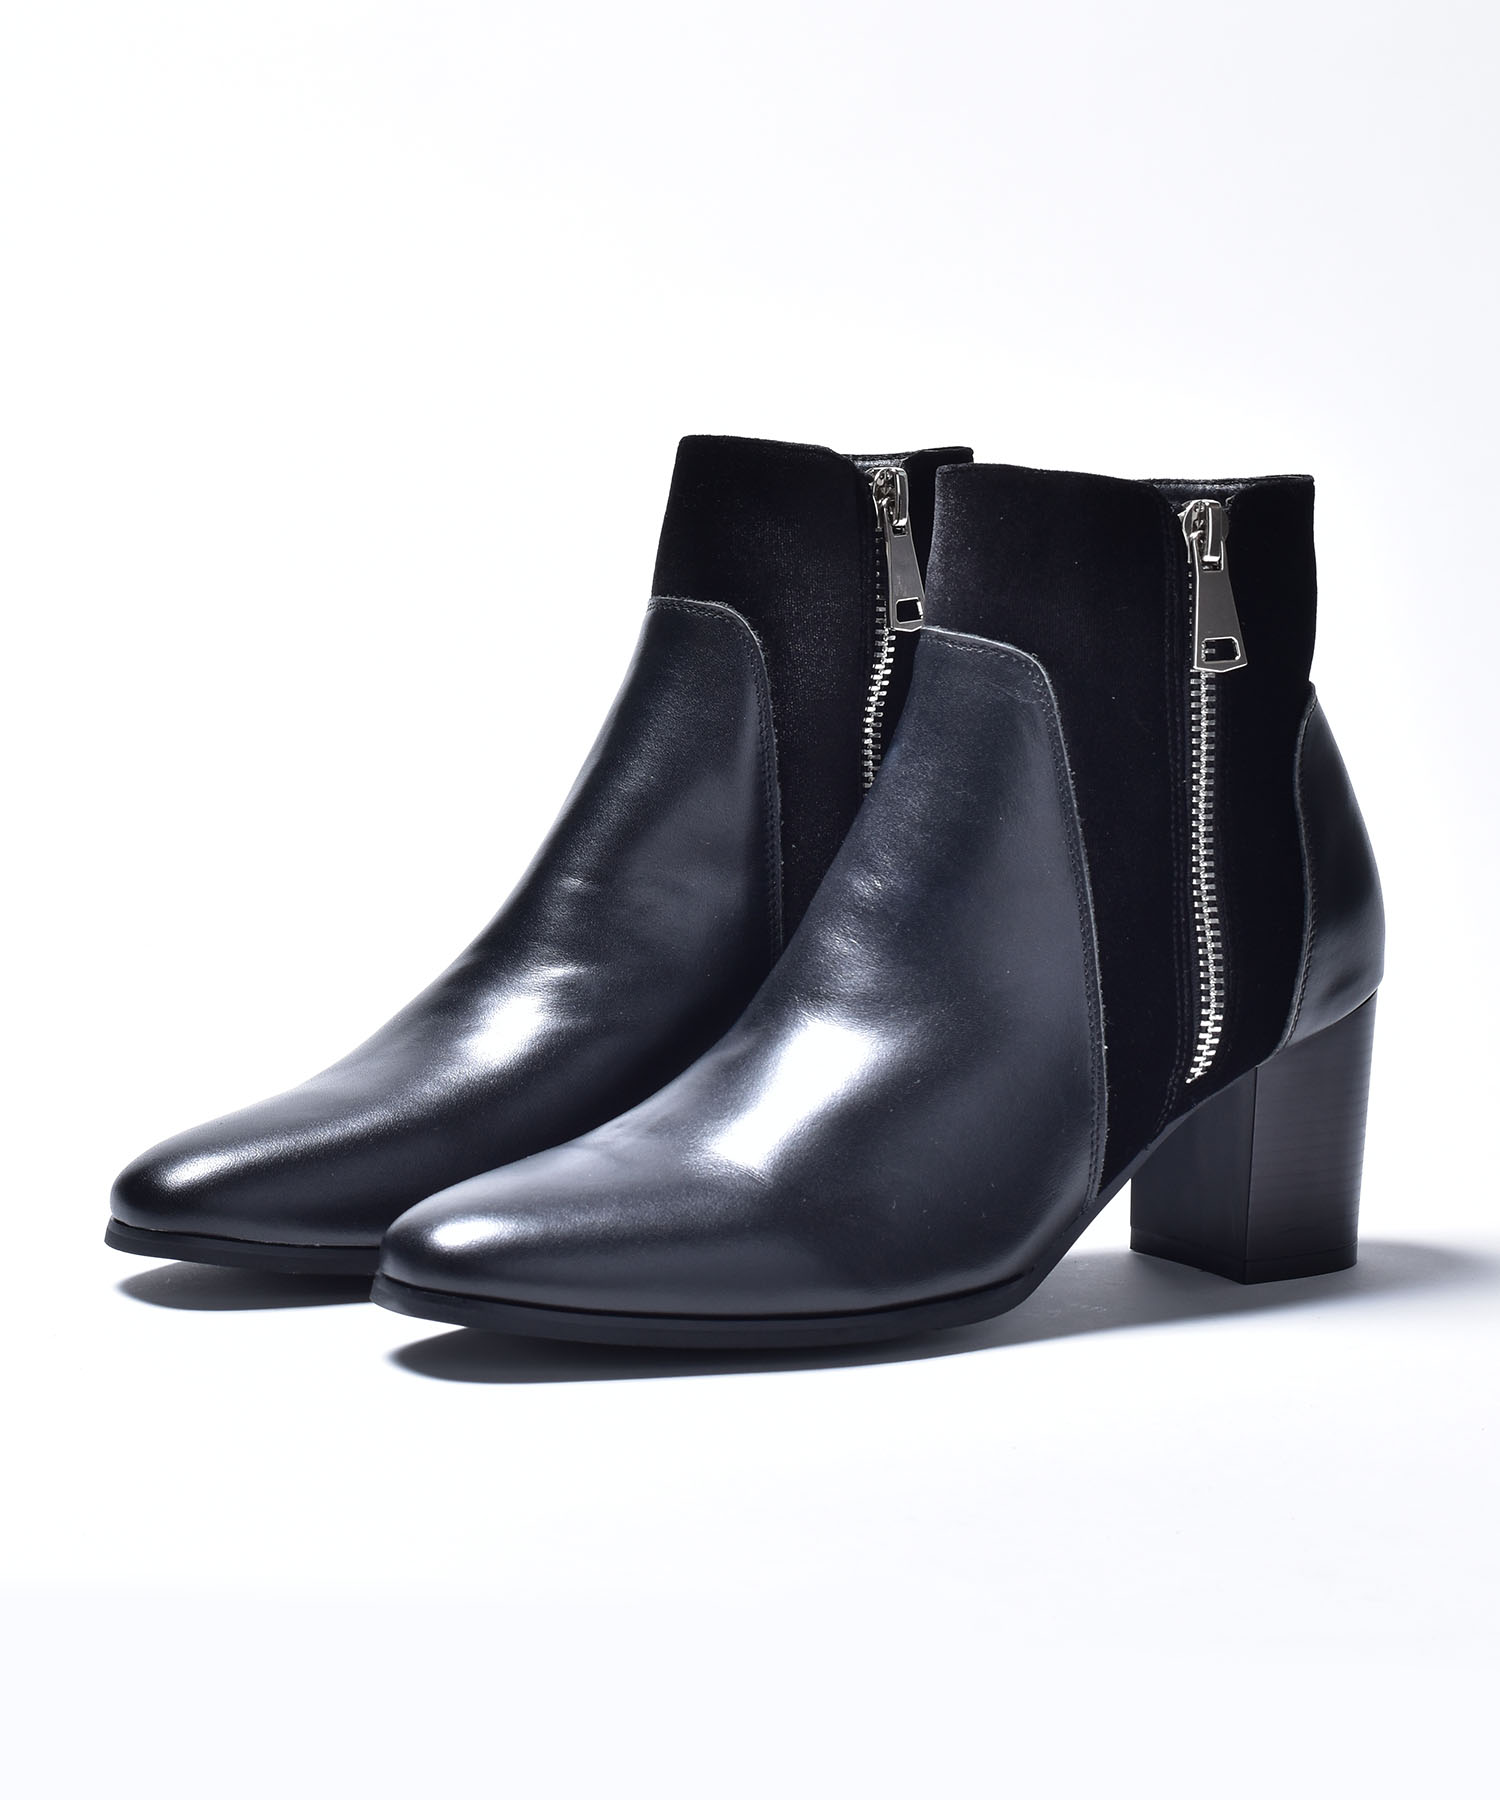 【セール】ショートブーツ メンズ ブーツ ハイヒール ドレスブーツ 本革 スエード レザー コンビ シューズ サイドジップ 男性 紳士靴 靴くつ  ベージュ ブラック 黒 (503300261) | シュベック(SVEC) - MAGASEEK